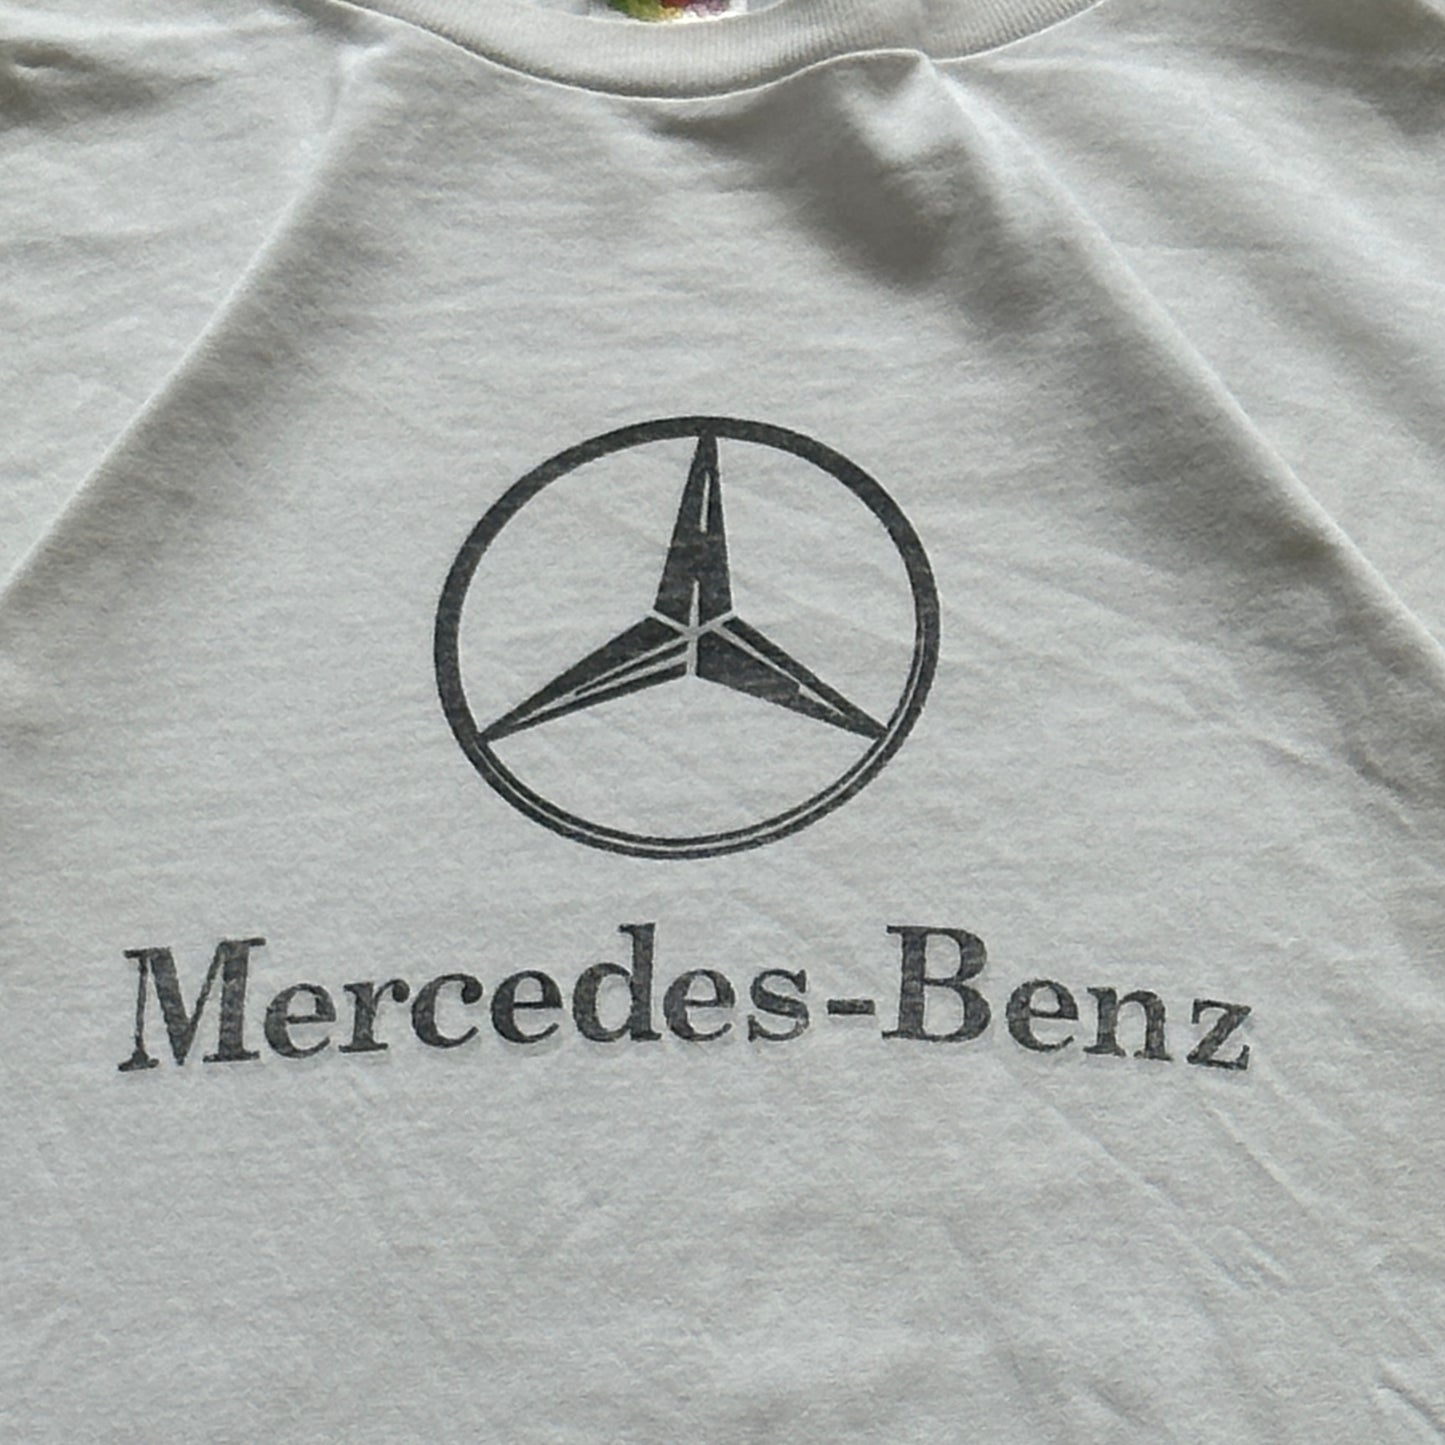 00’s Mercedes Benz Tee